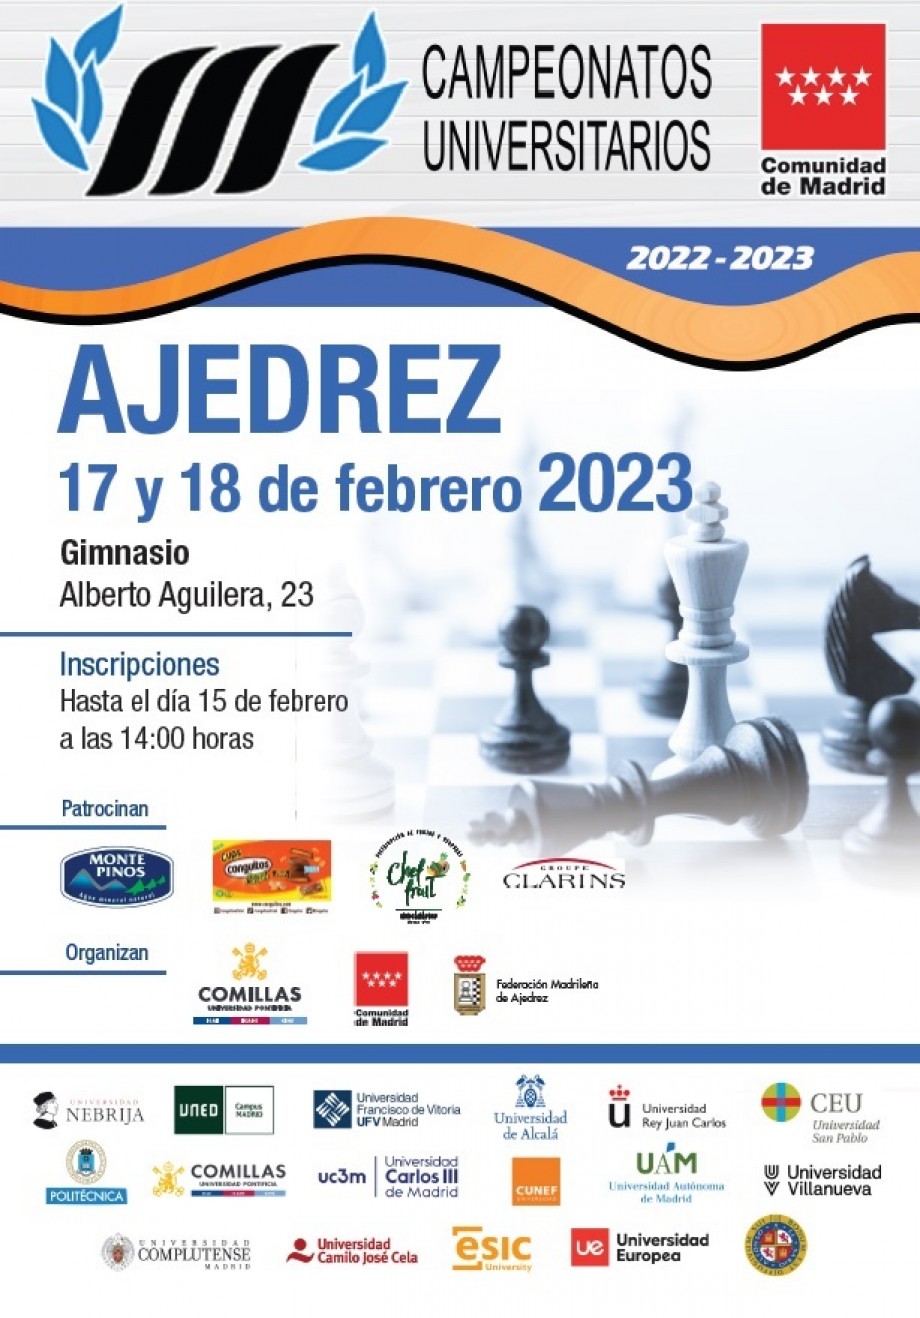 Campeonato Universitario de Madrid de Ajedrez 2023